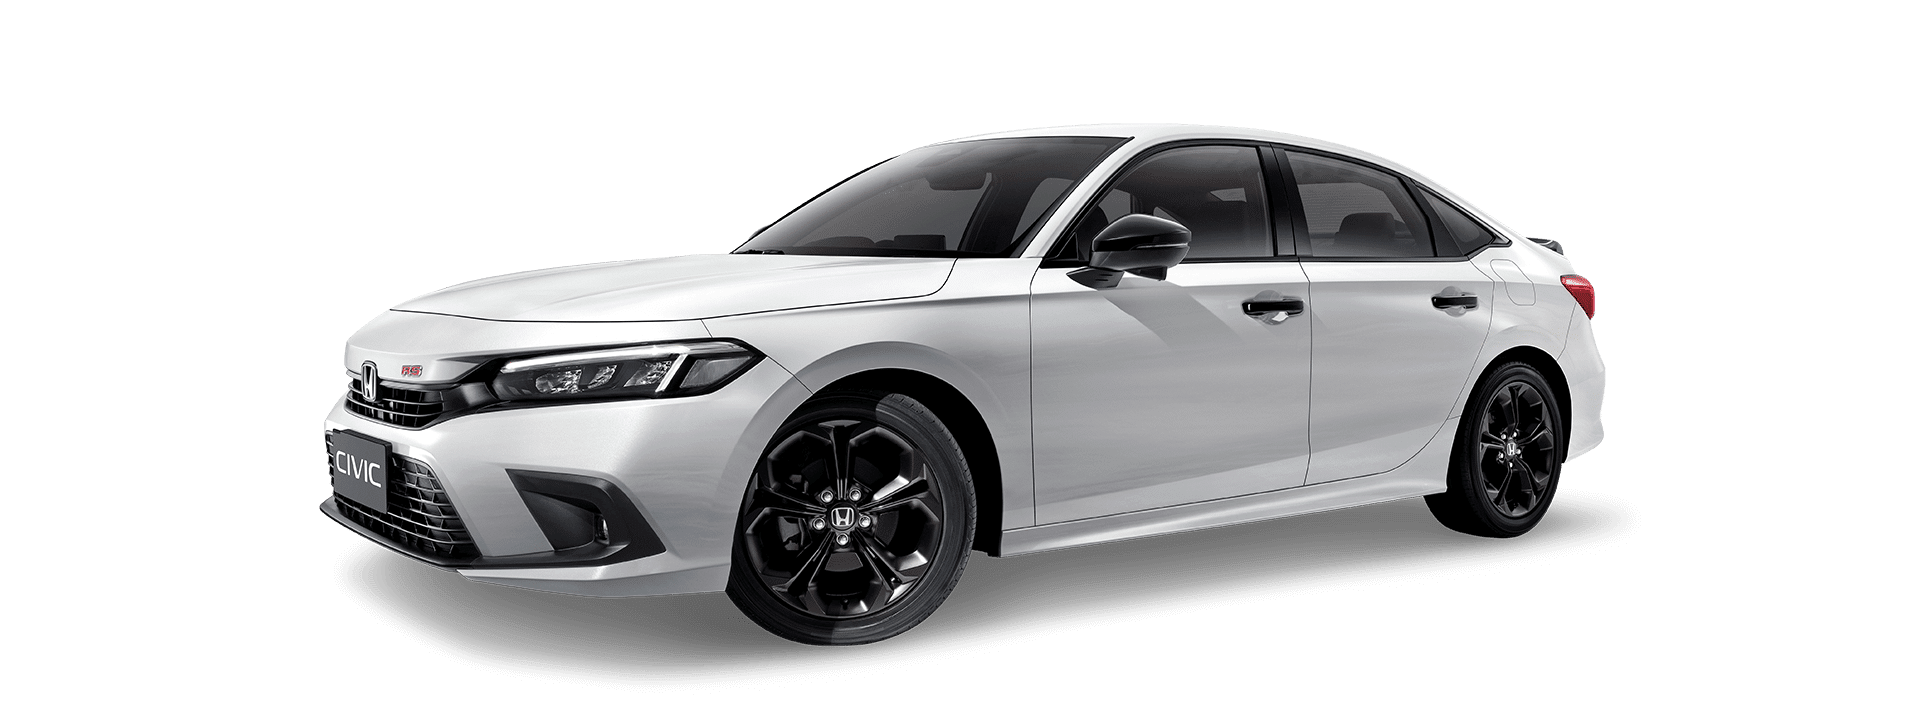 รถยนต์ฮอนด้ารุ่น New Civic ราคาเริ่มต้นที่ 964,900 บาท